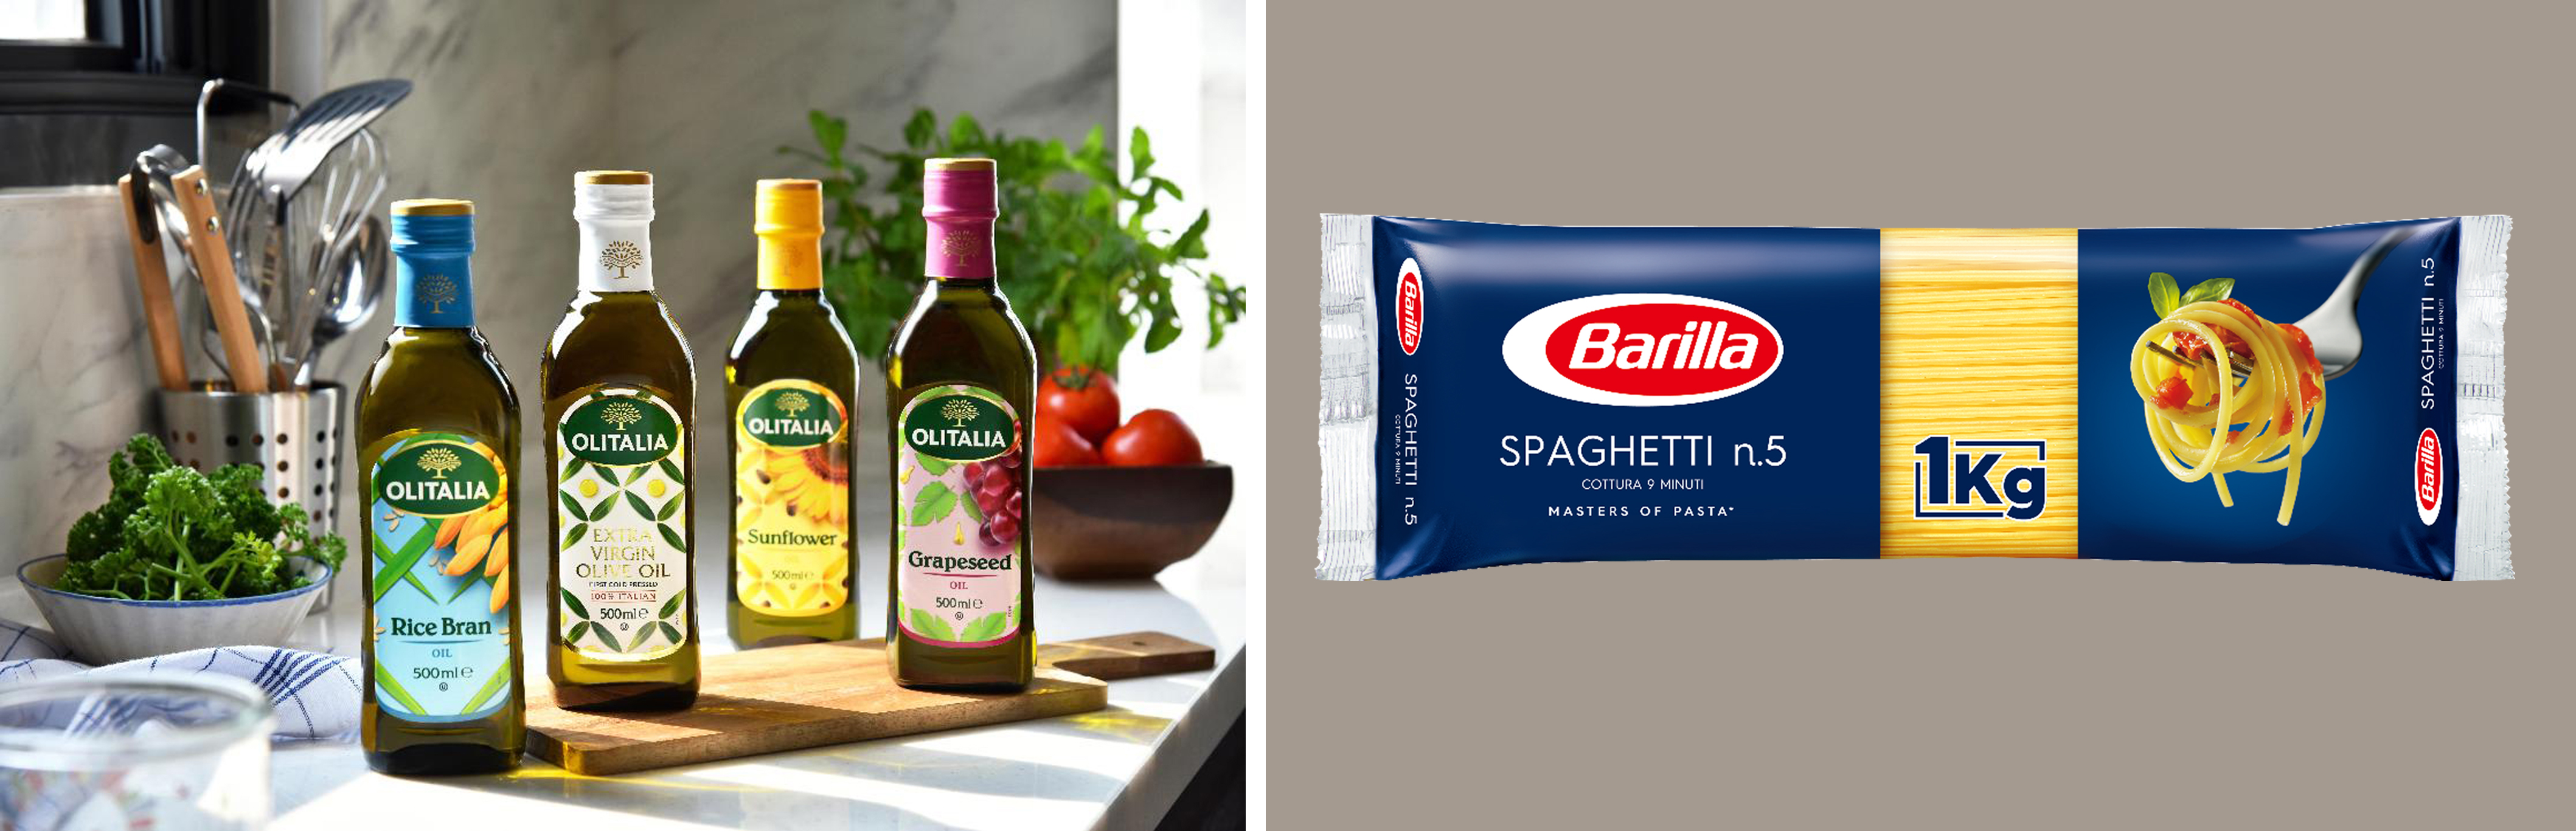 （左圖）Olitalia奧利塔玄米油、橄欖油、葵花油、葡萄籽油；（右圖）協憶引進全世界最大義大利麵品牌百味來的義大利麵產品。